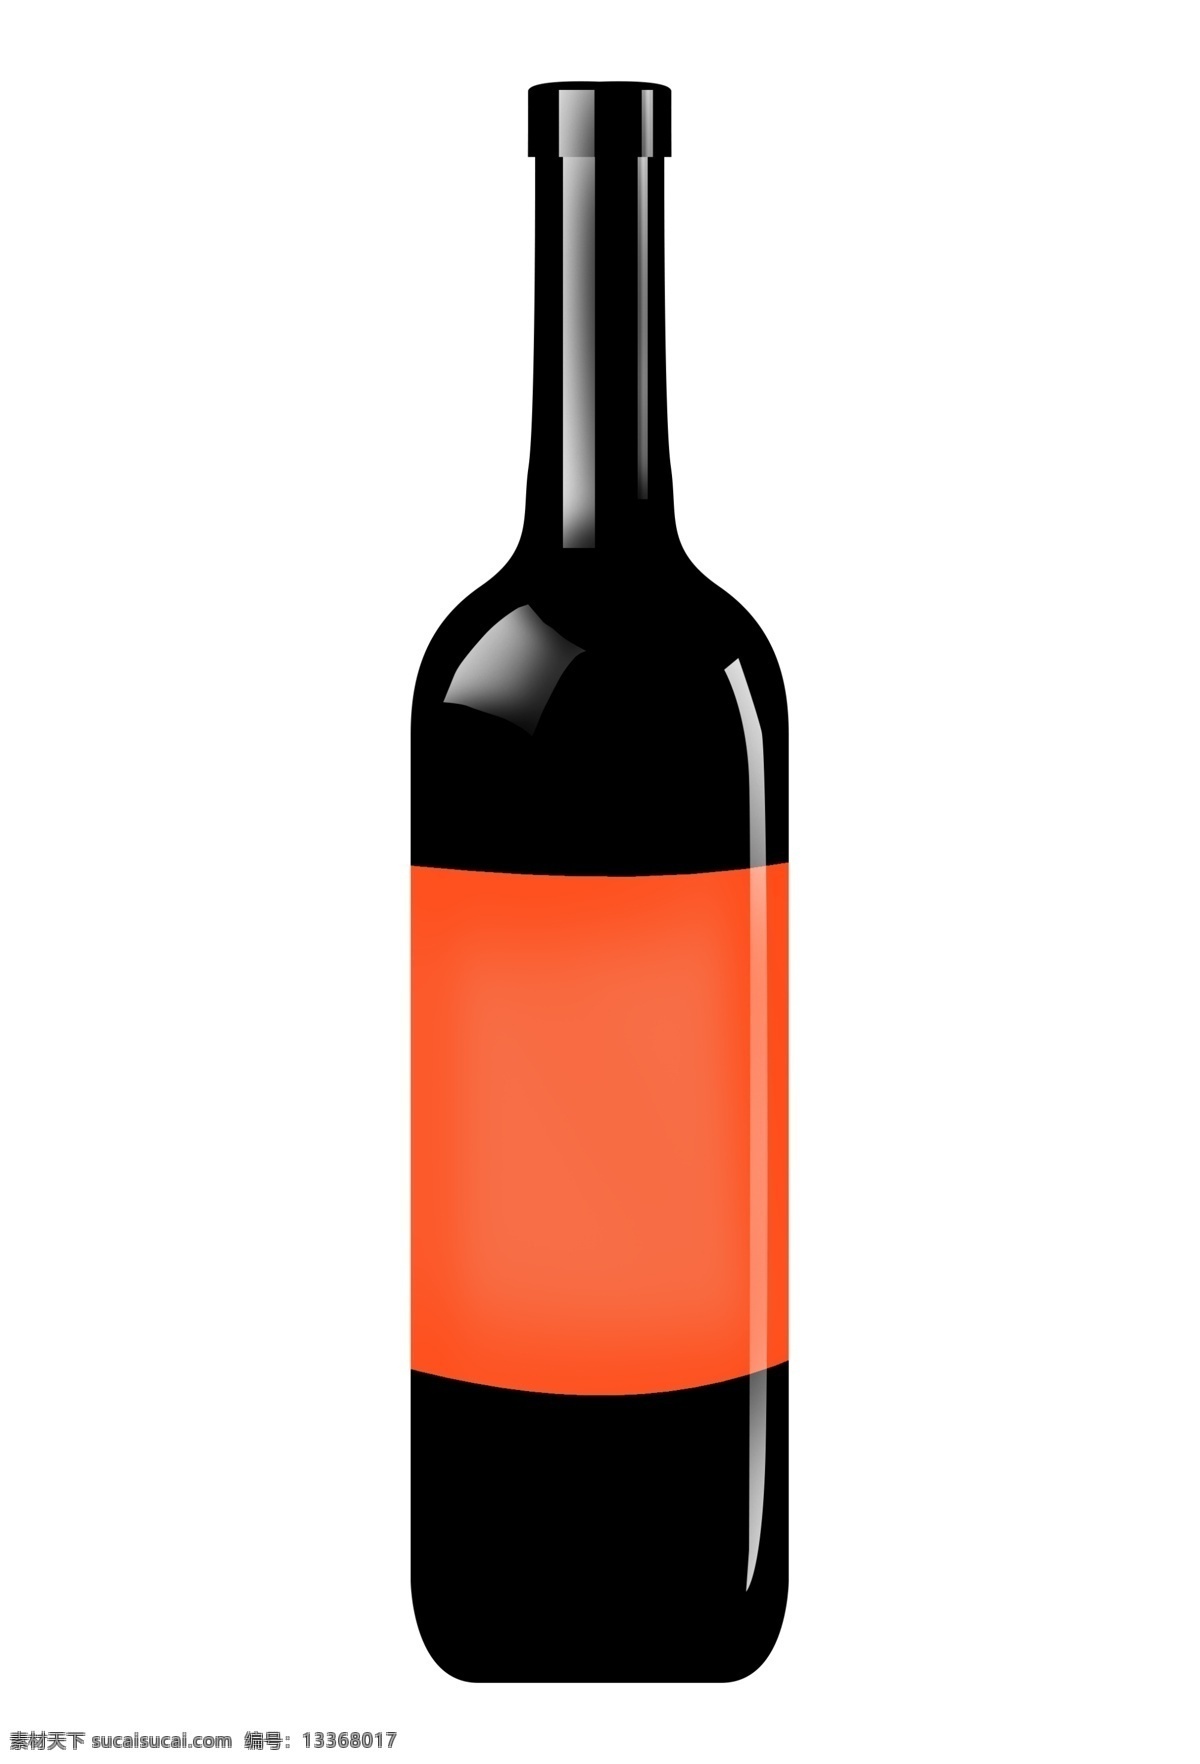 红色 装饰 红酒 瓶子 酒瓶 红酒插画 一瓶红酒 红酒插图 喝酒 红葡萄酒 酒